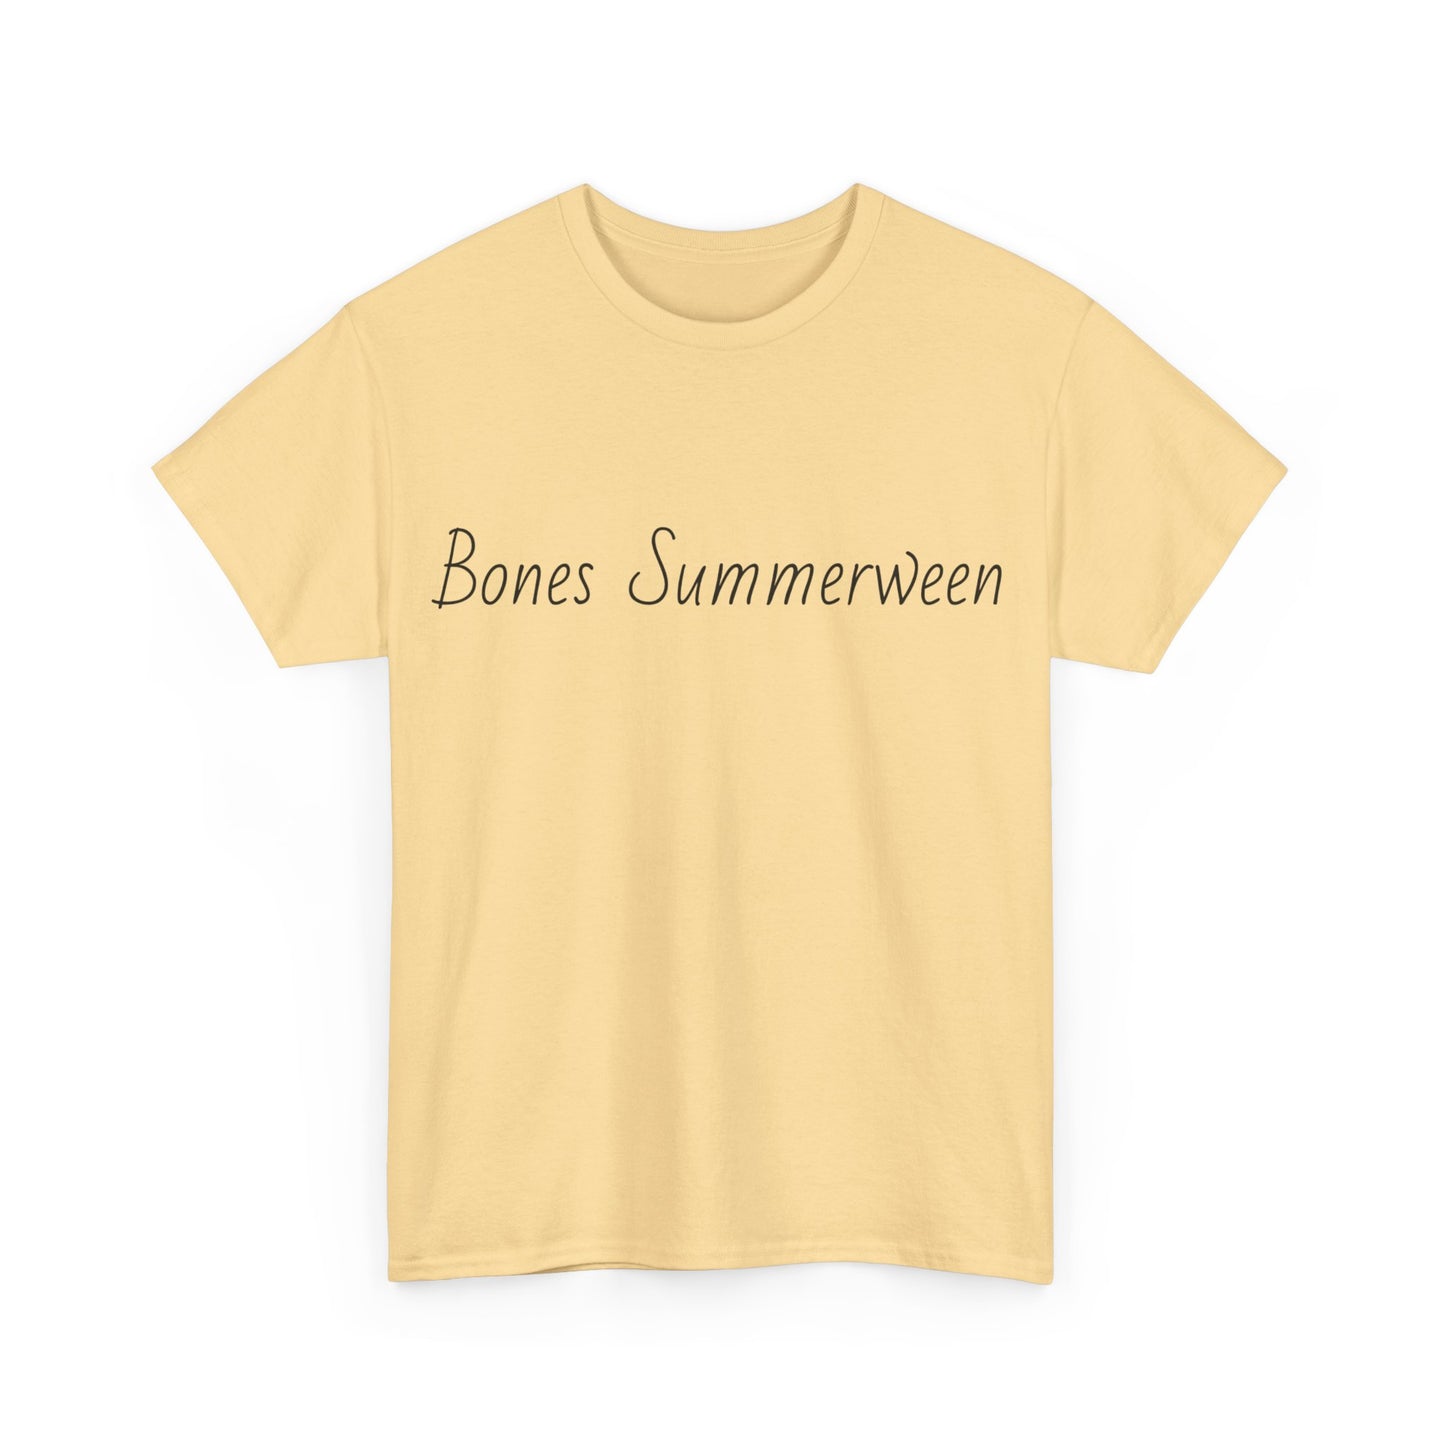 Bones Summerween Tee